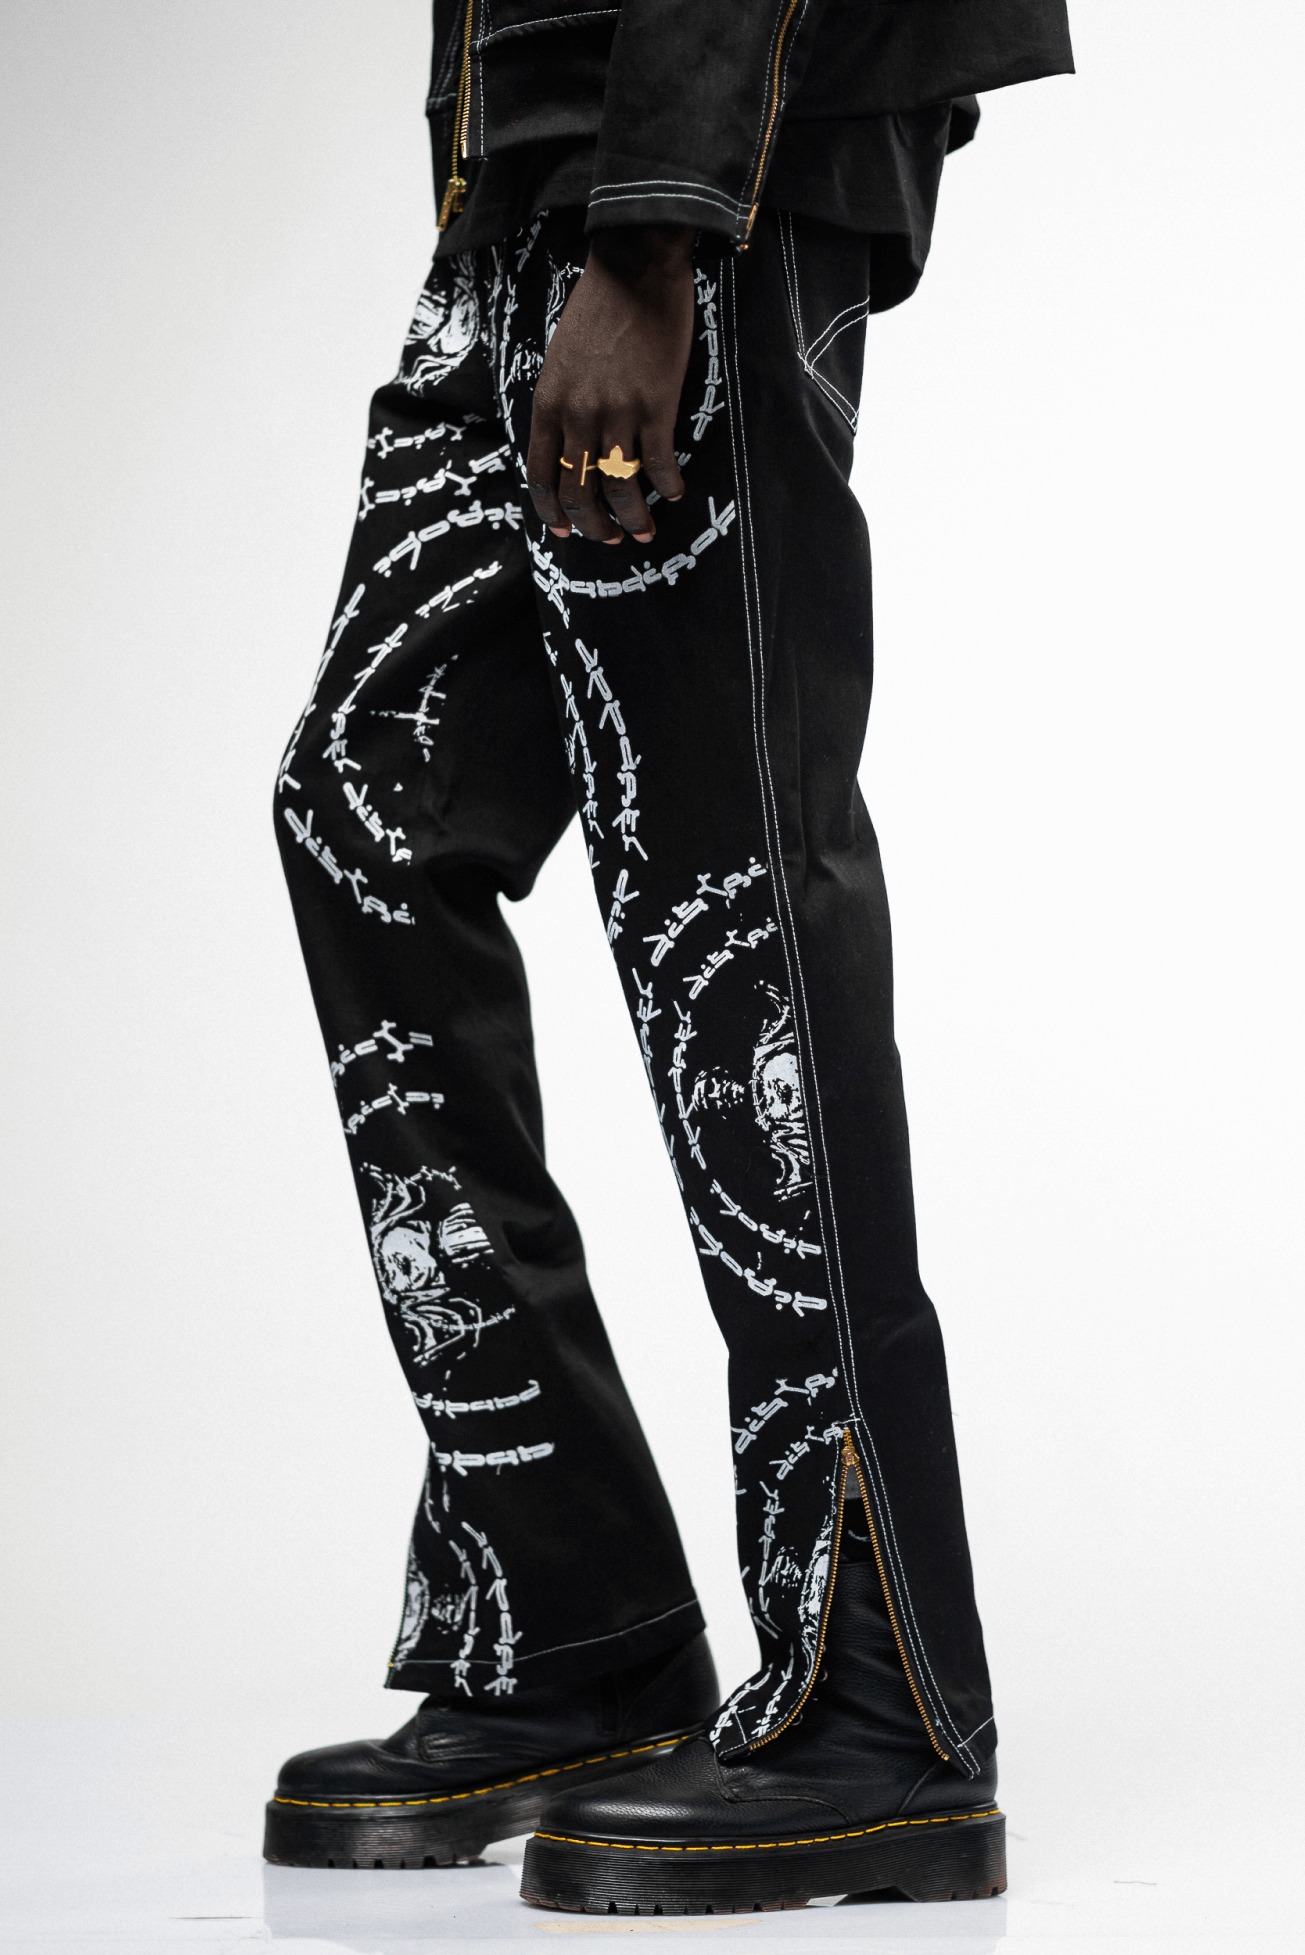 Shop JC Black Printed Pants by Nairobi Apparel District on Arrai